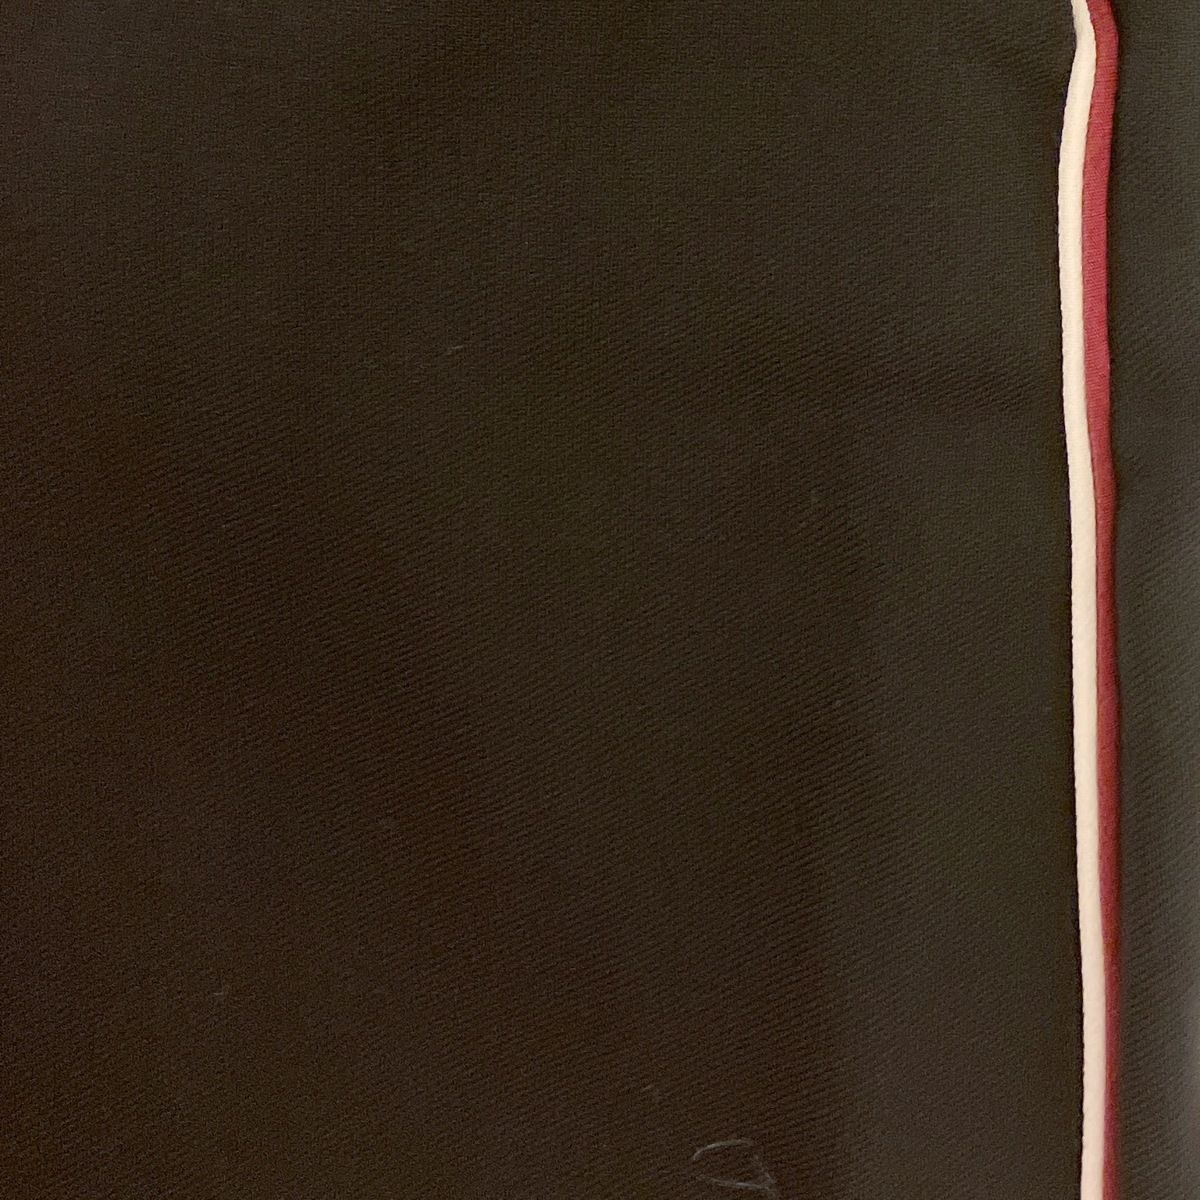 stellamccartney(ステラマッカートニー) パンツ サイズ44 XL レディース - 黒×白×ボルドー フルレングス/ワイドパンツ -  メルカリ